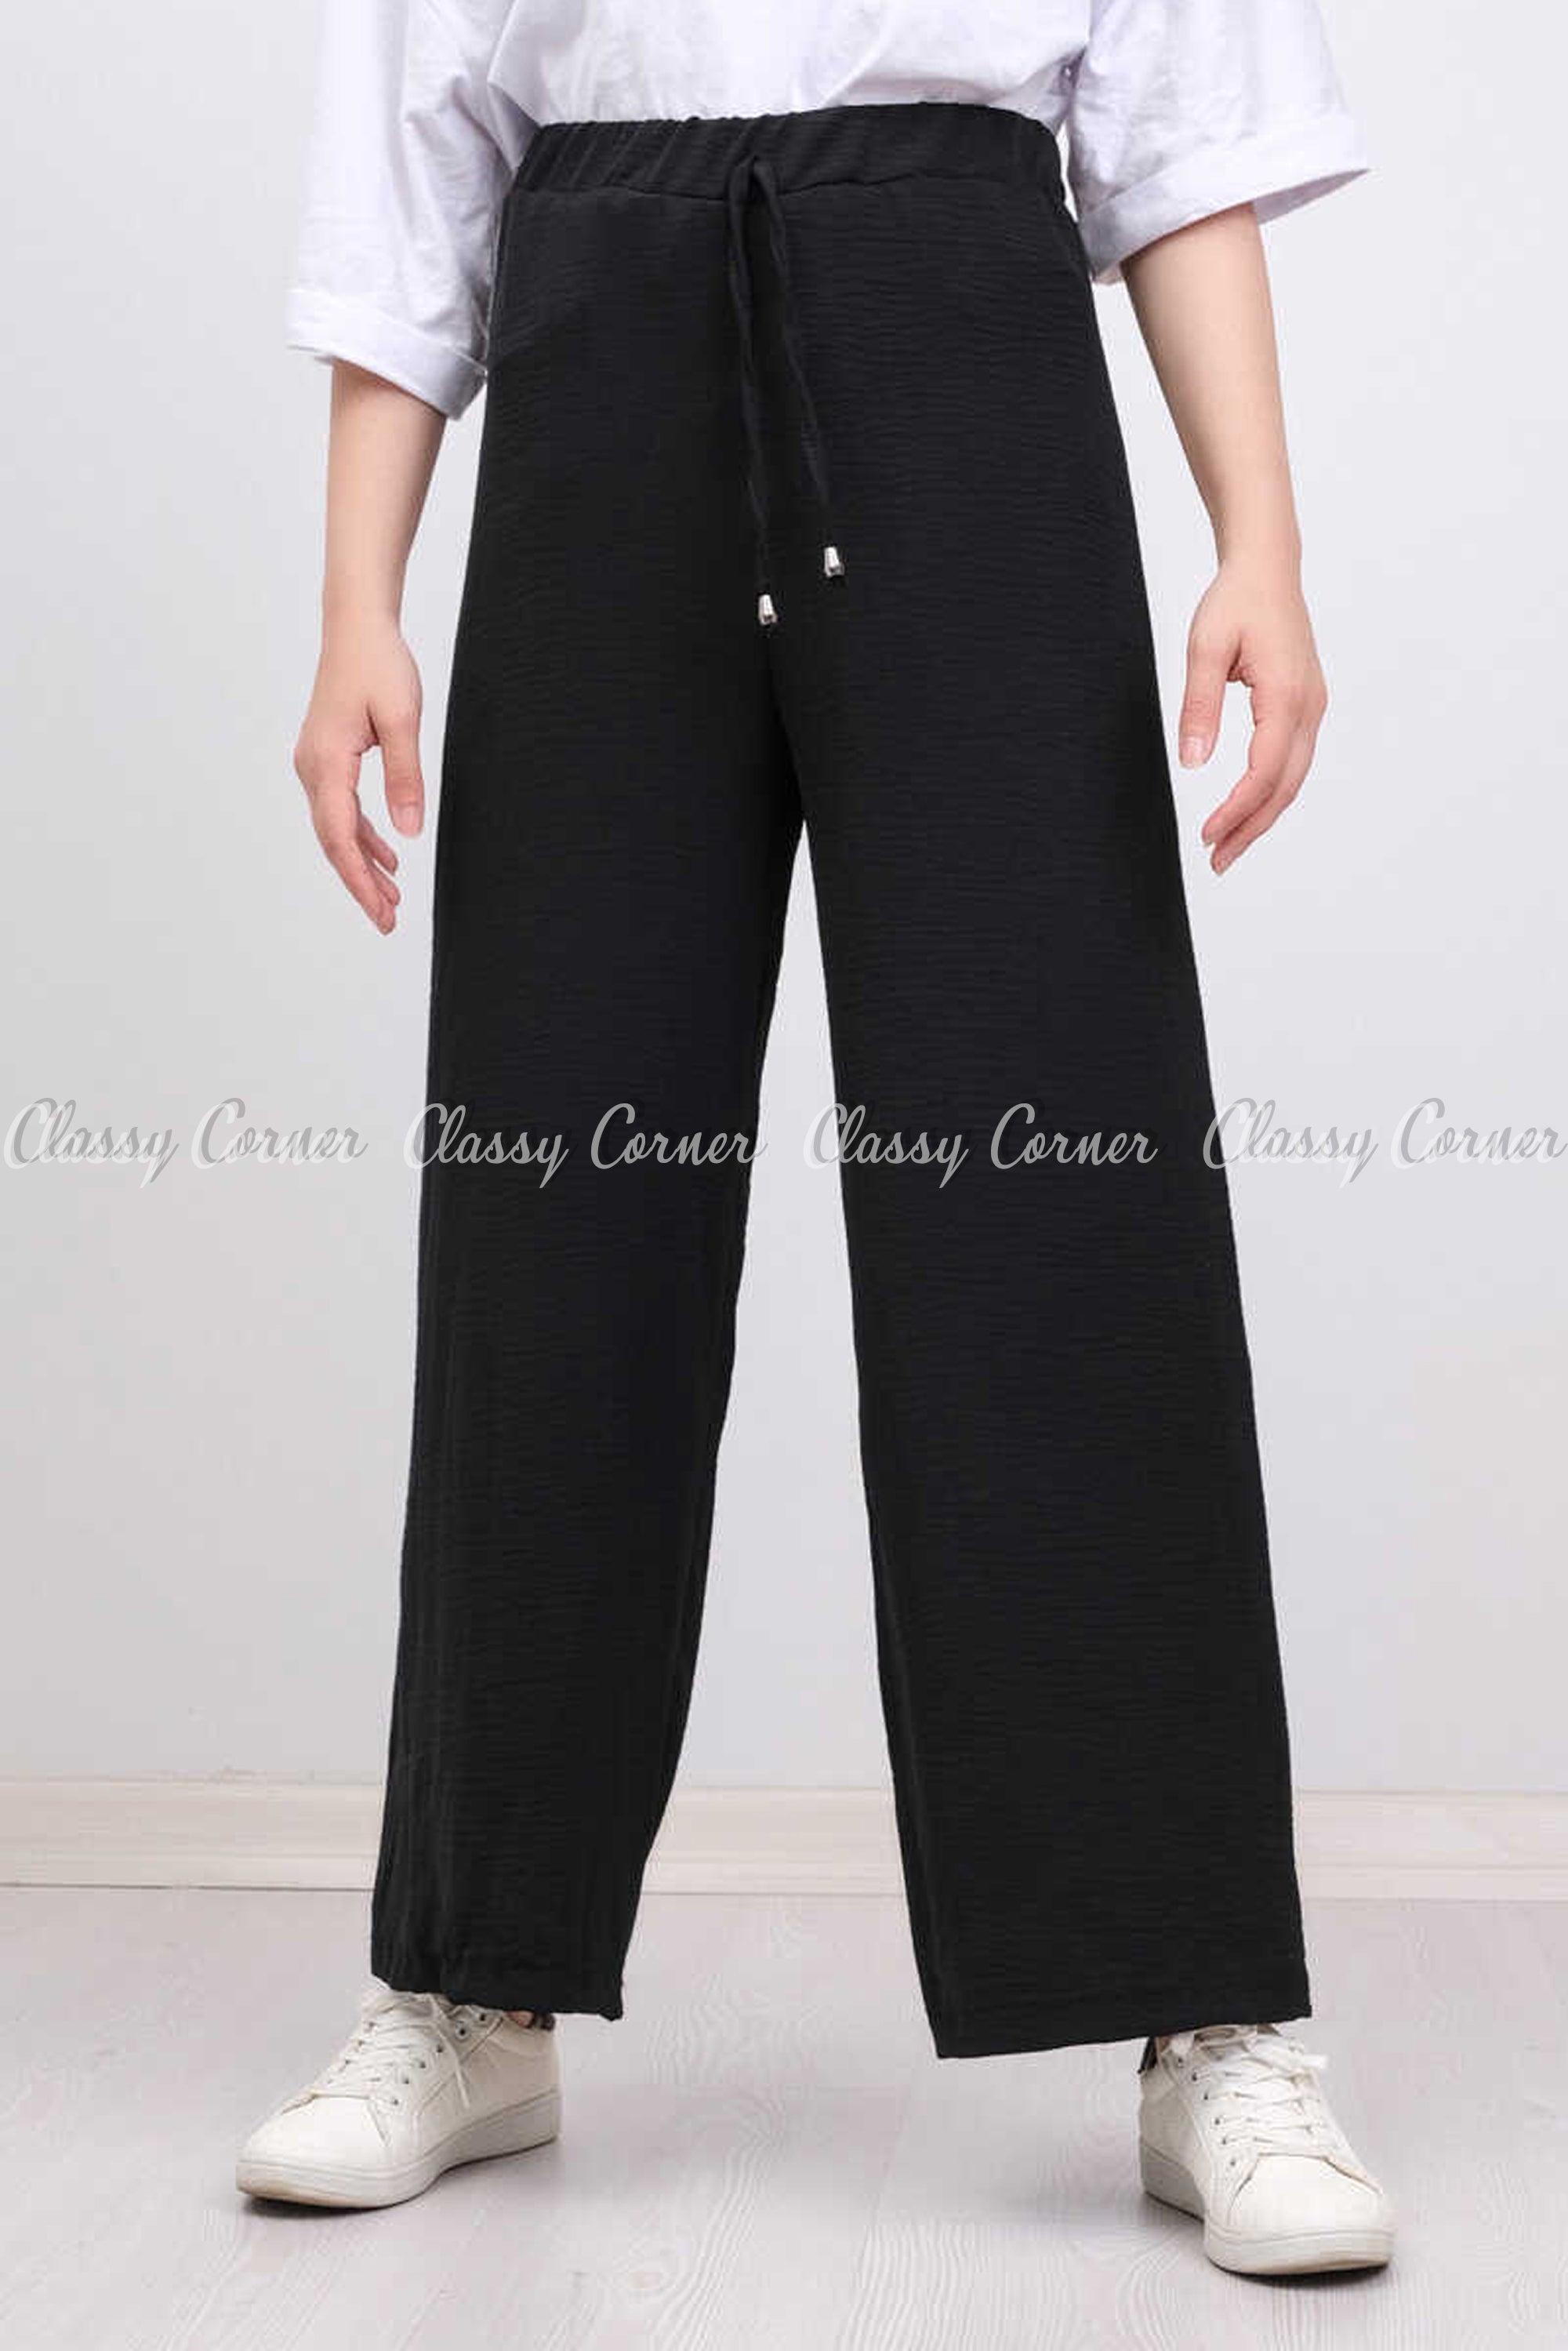 Elastic Waist Black Modest Comfy Pants - front view